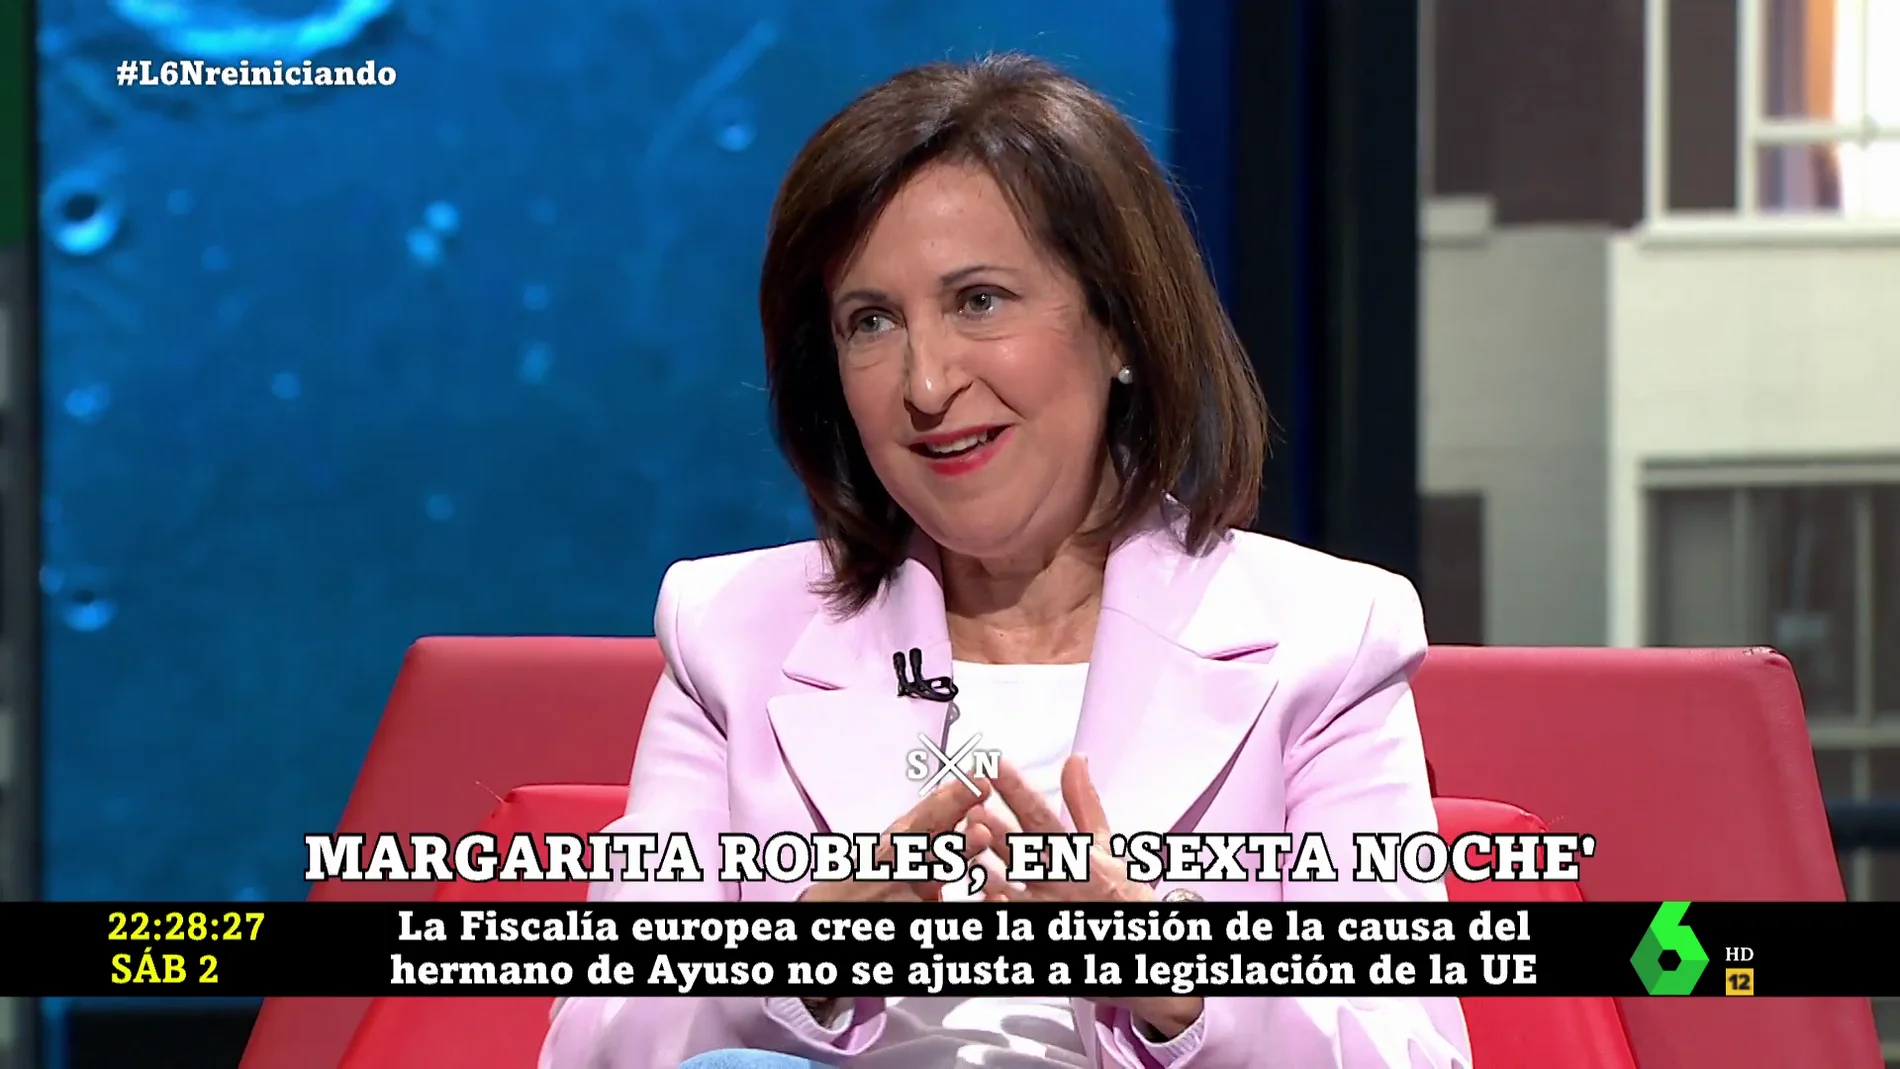 Margarita Robles